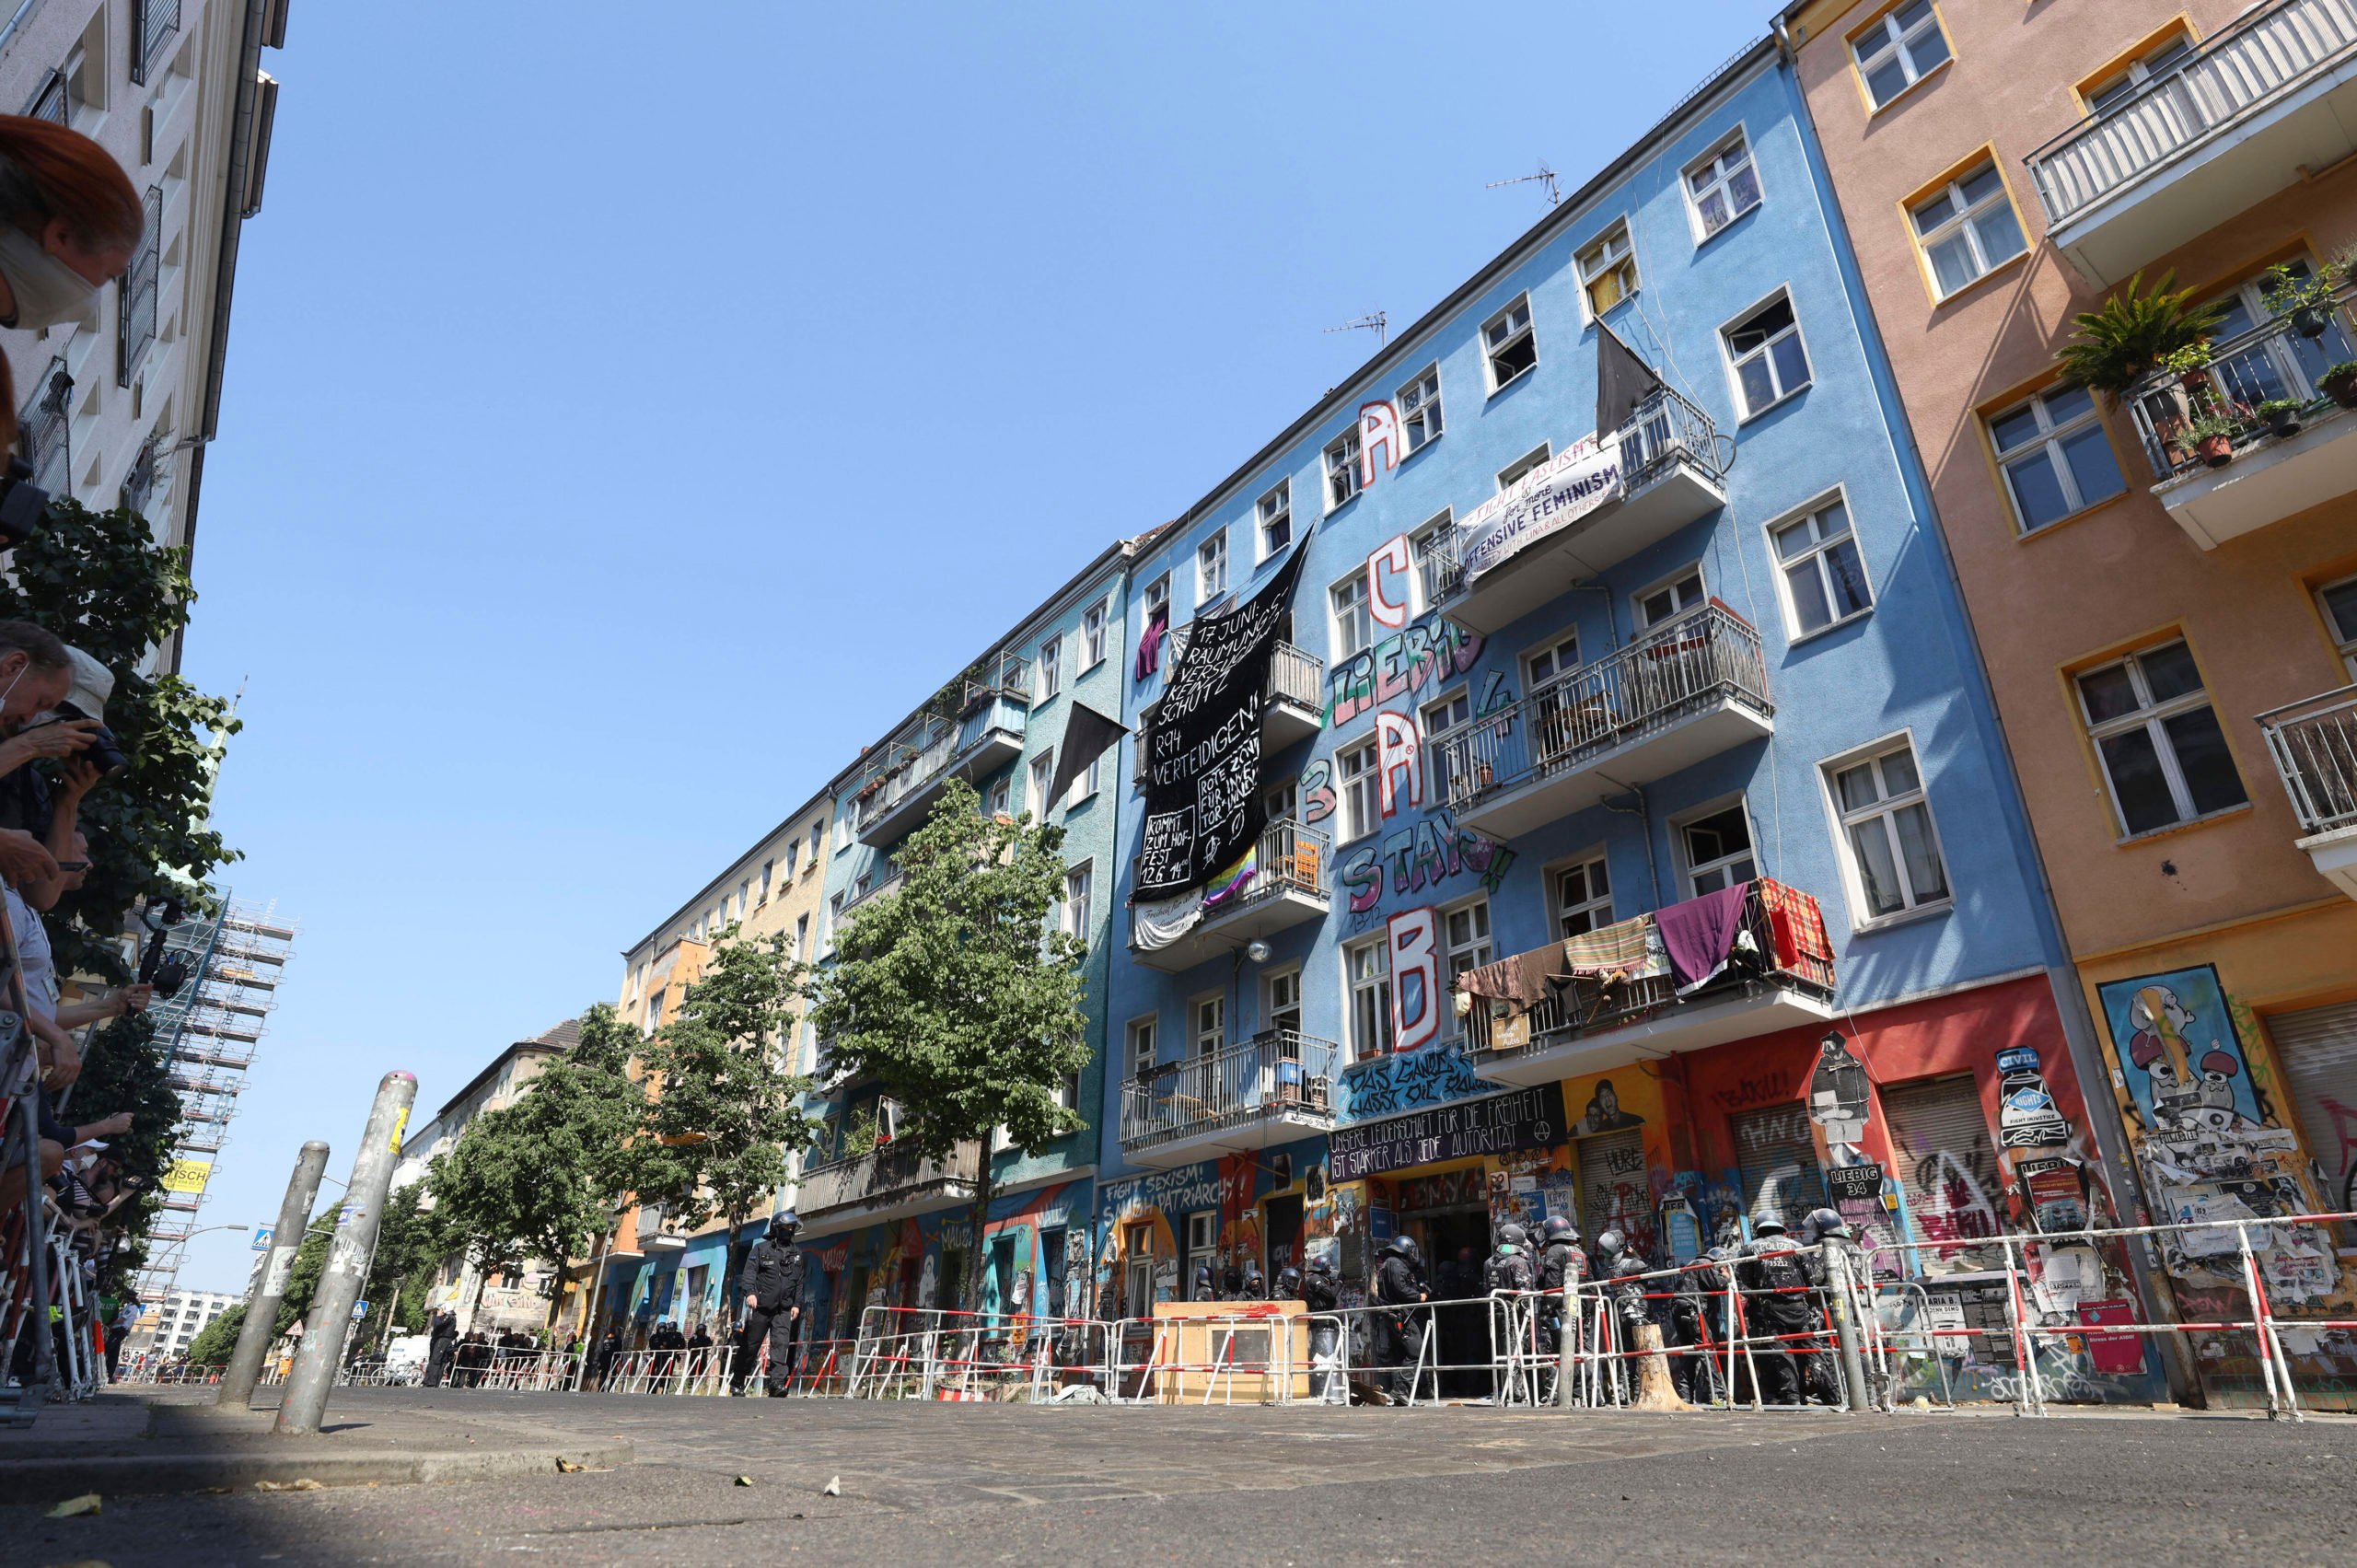 Linke Hausprojekte in der Rigaer Straße in Friedrichshain. Foto: Imago/B. Kriemann/Future Image